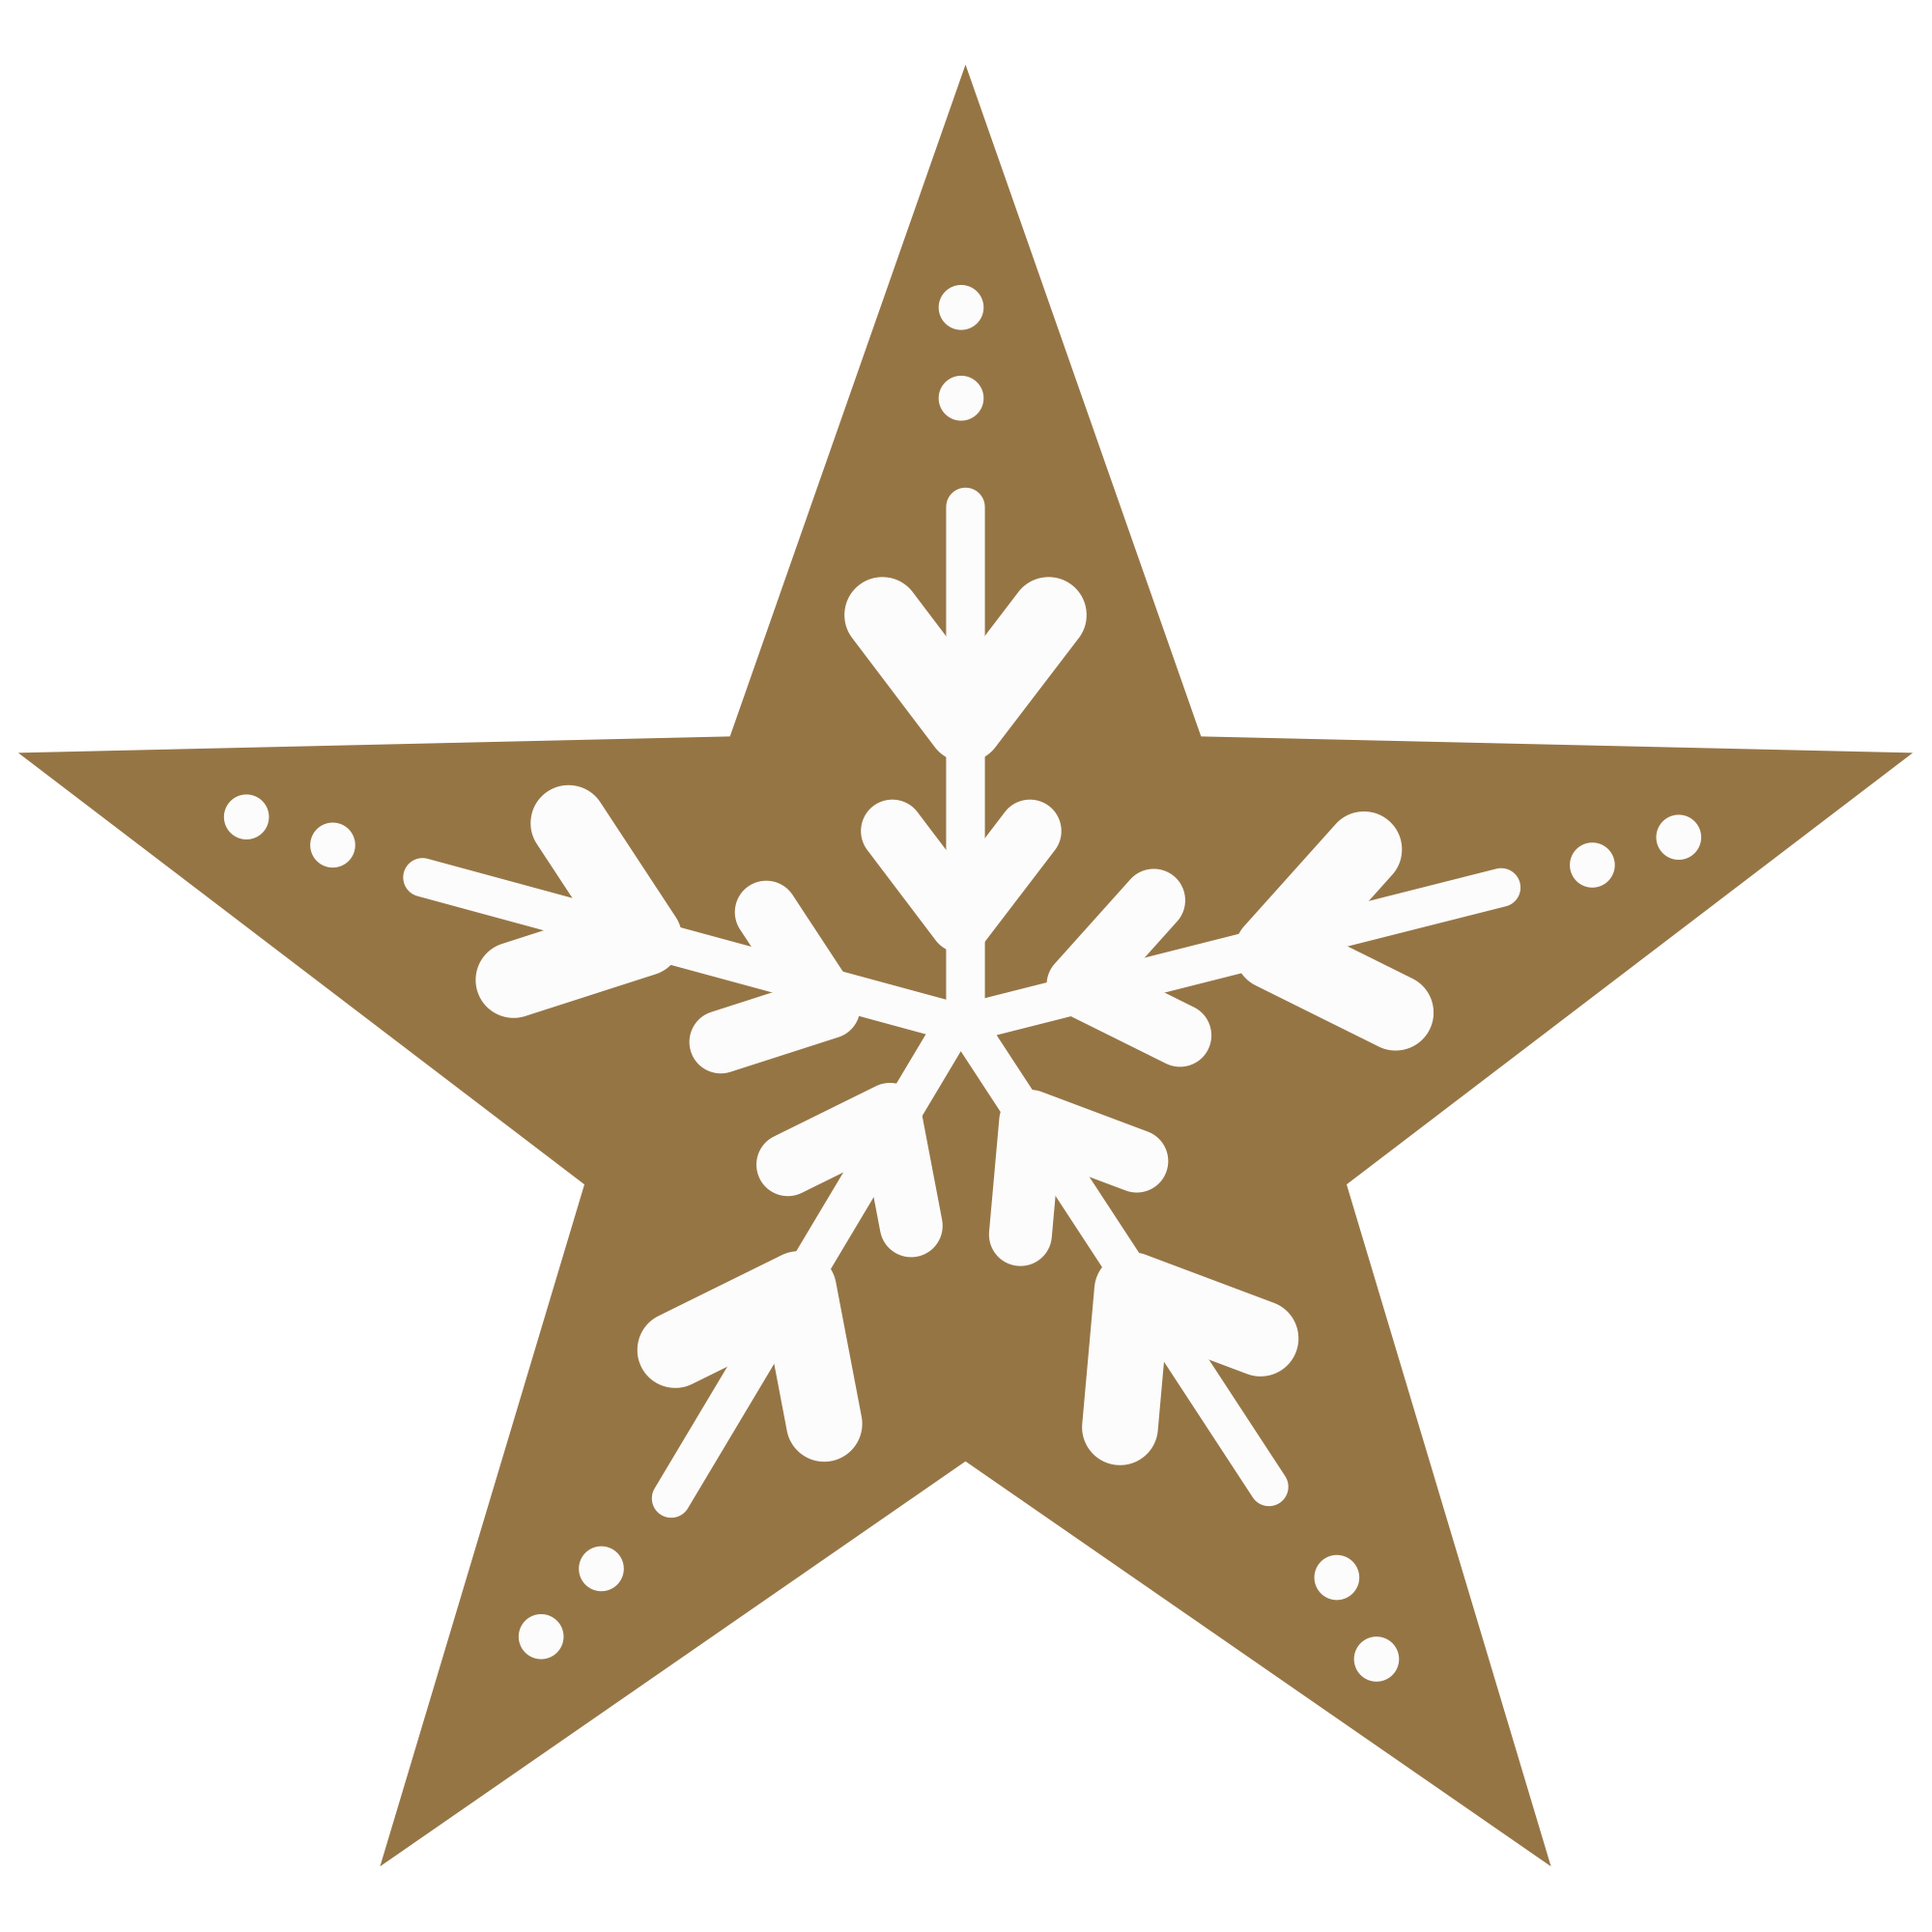 雪の結晶と星マーク イラスト素材館